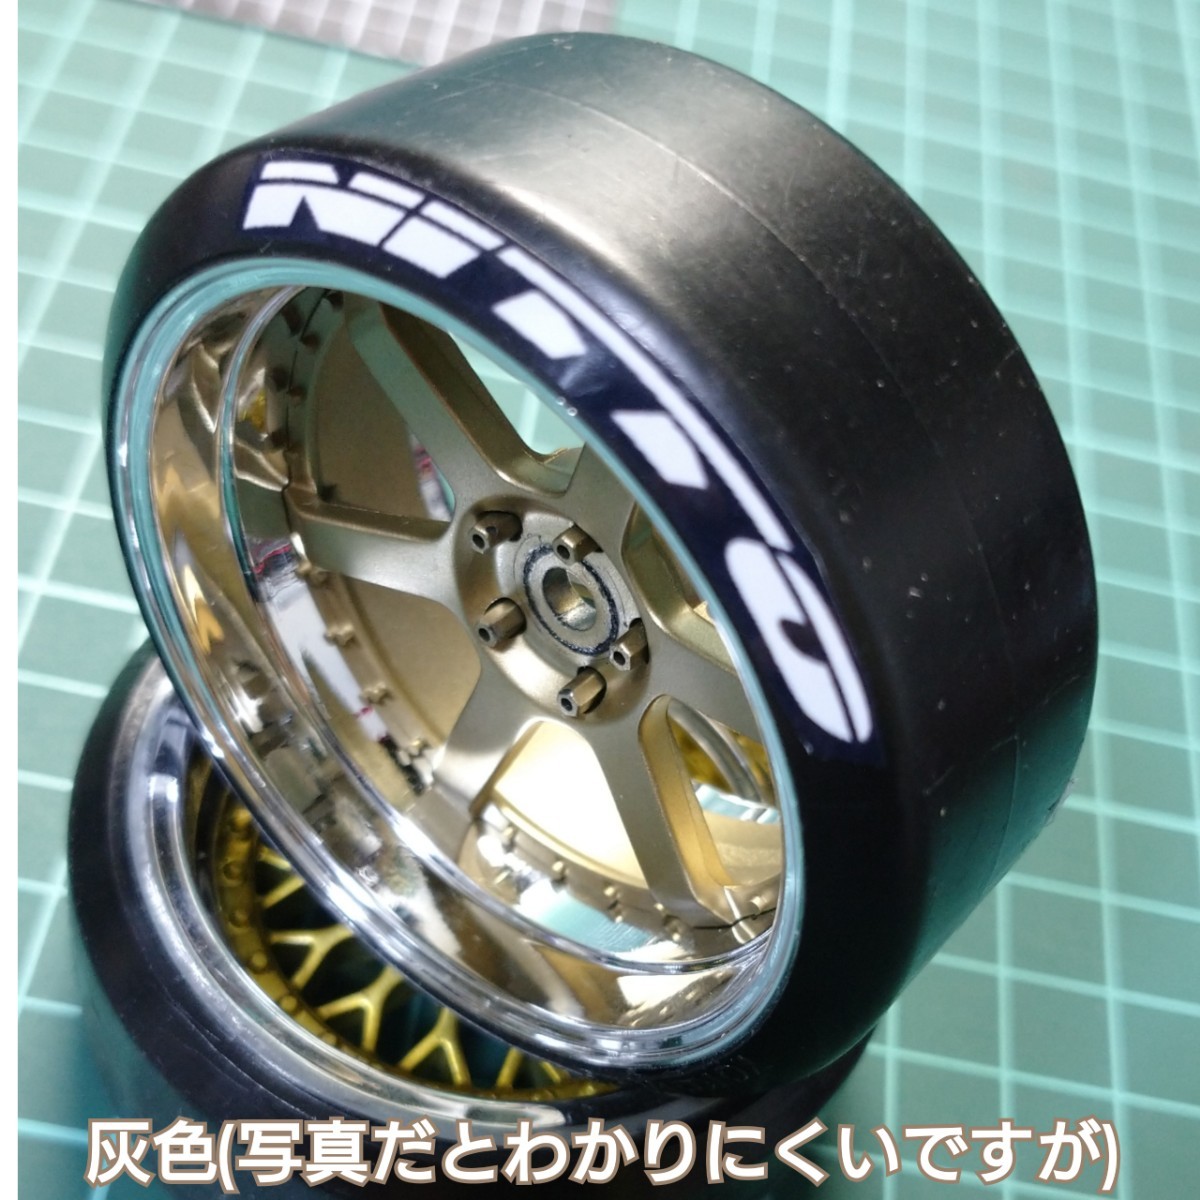 タイヤ　ステッカー(Nittoタイヤ版)　1/10 ラジドリ ラジコン ヨコモ YD-2